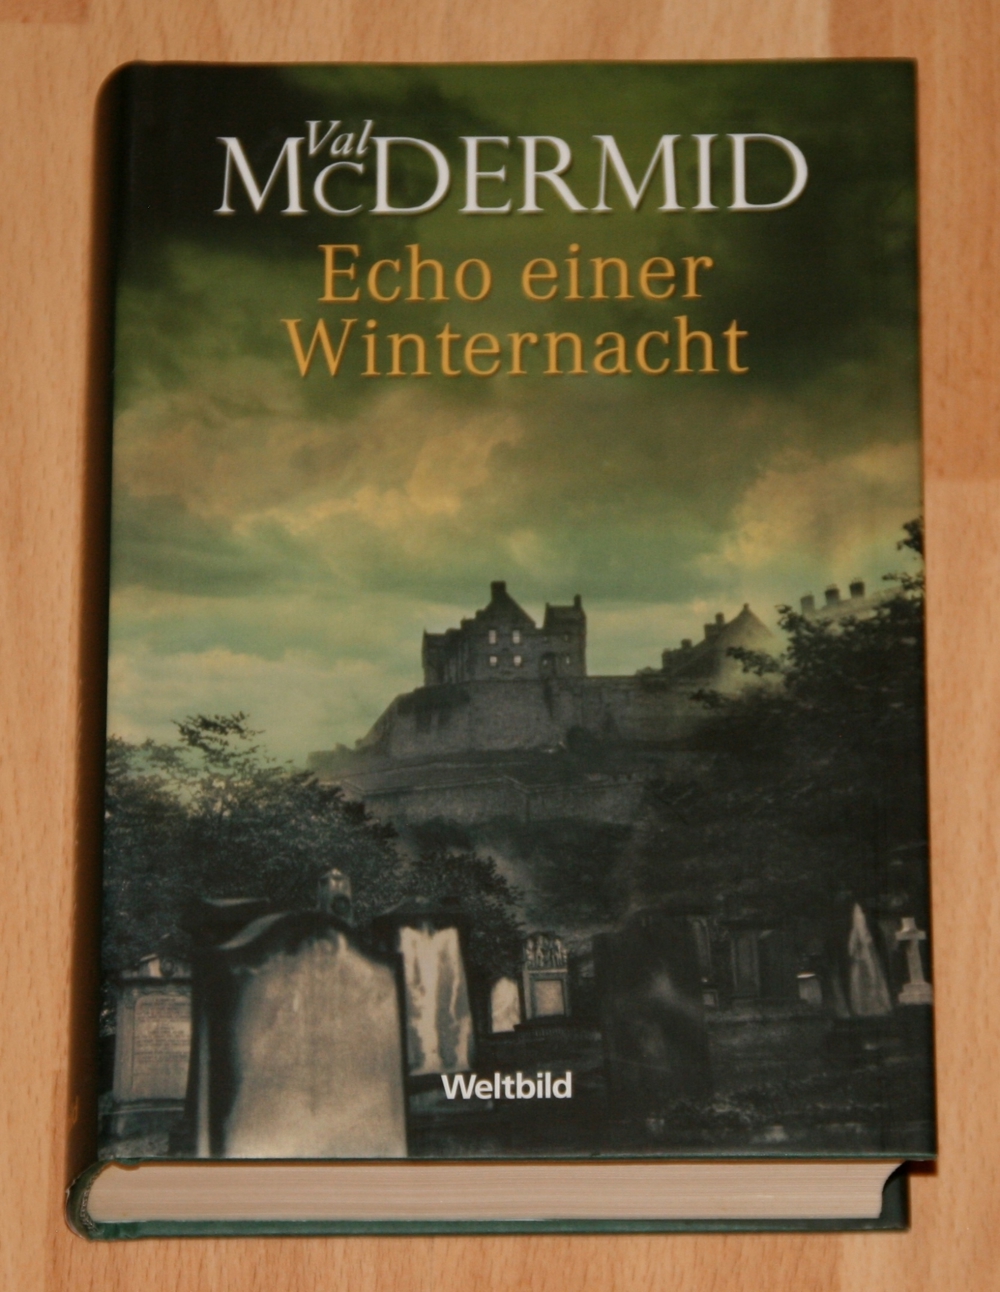 Buch "Echo einer Winternacht" von Val McDermid - TOP-Zustand !!